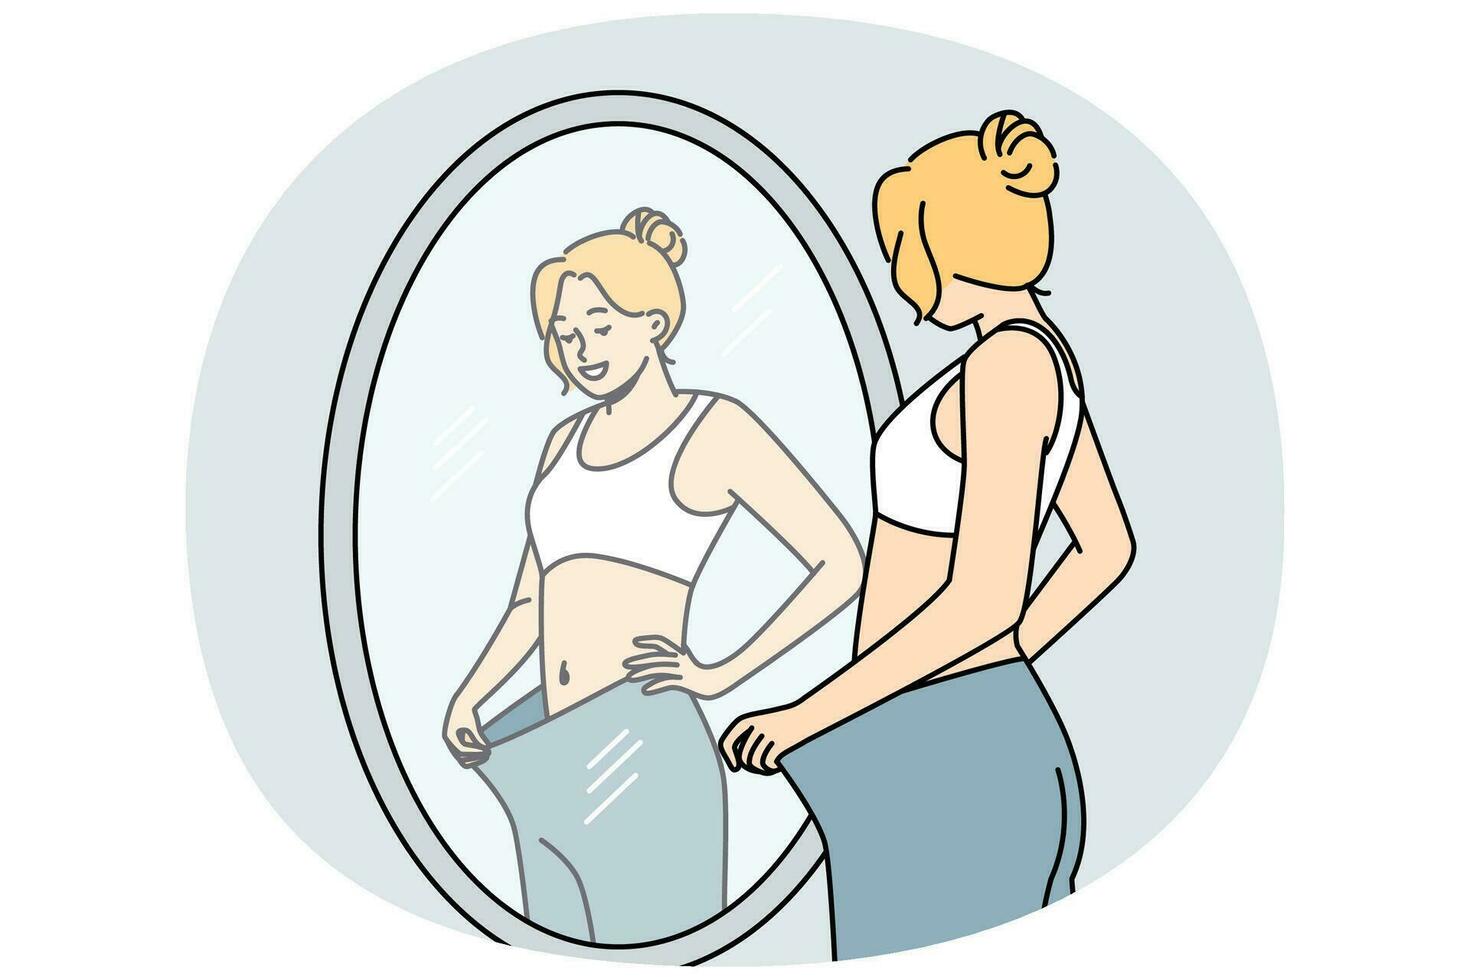 contento giovane donna Guarda nel specchio vedere perdere grande i pantaloni perdere peso con sport e dieta. sorridente soddisfatto ragazza perdita di peso viaggio. vettore illustrazione.